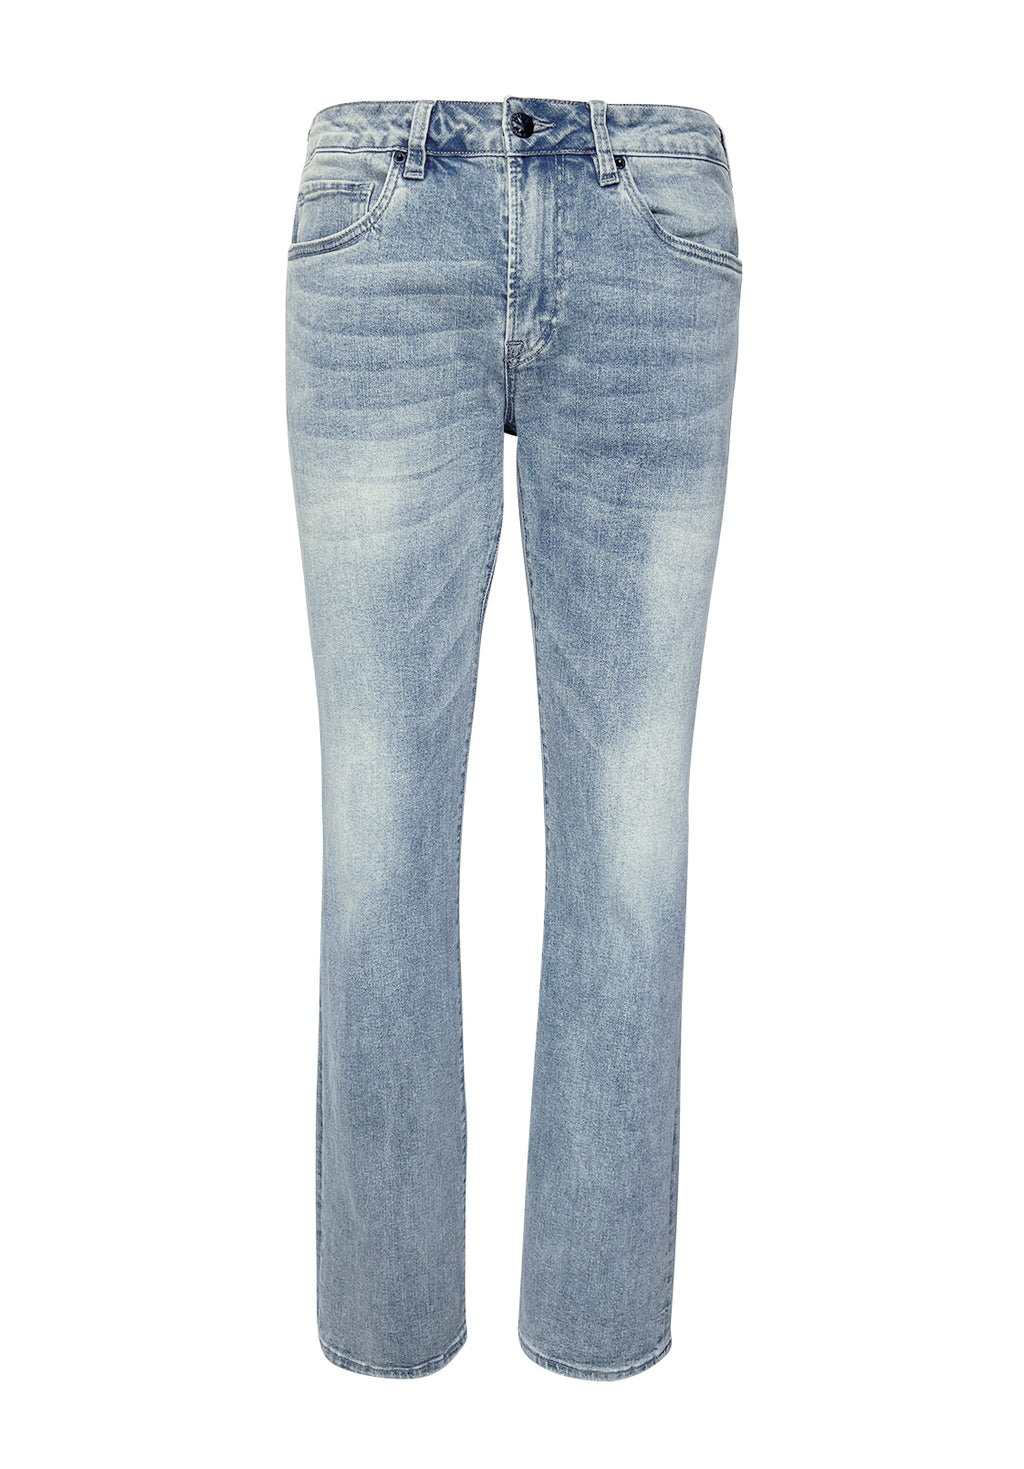 Slim Ash Men's Jeans in Crinkled Light Blue - BM22784